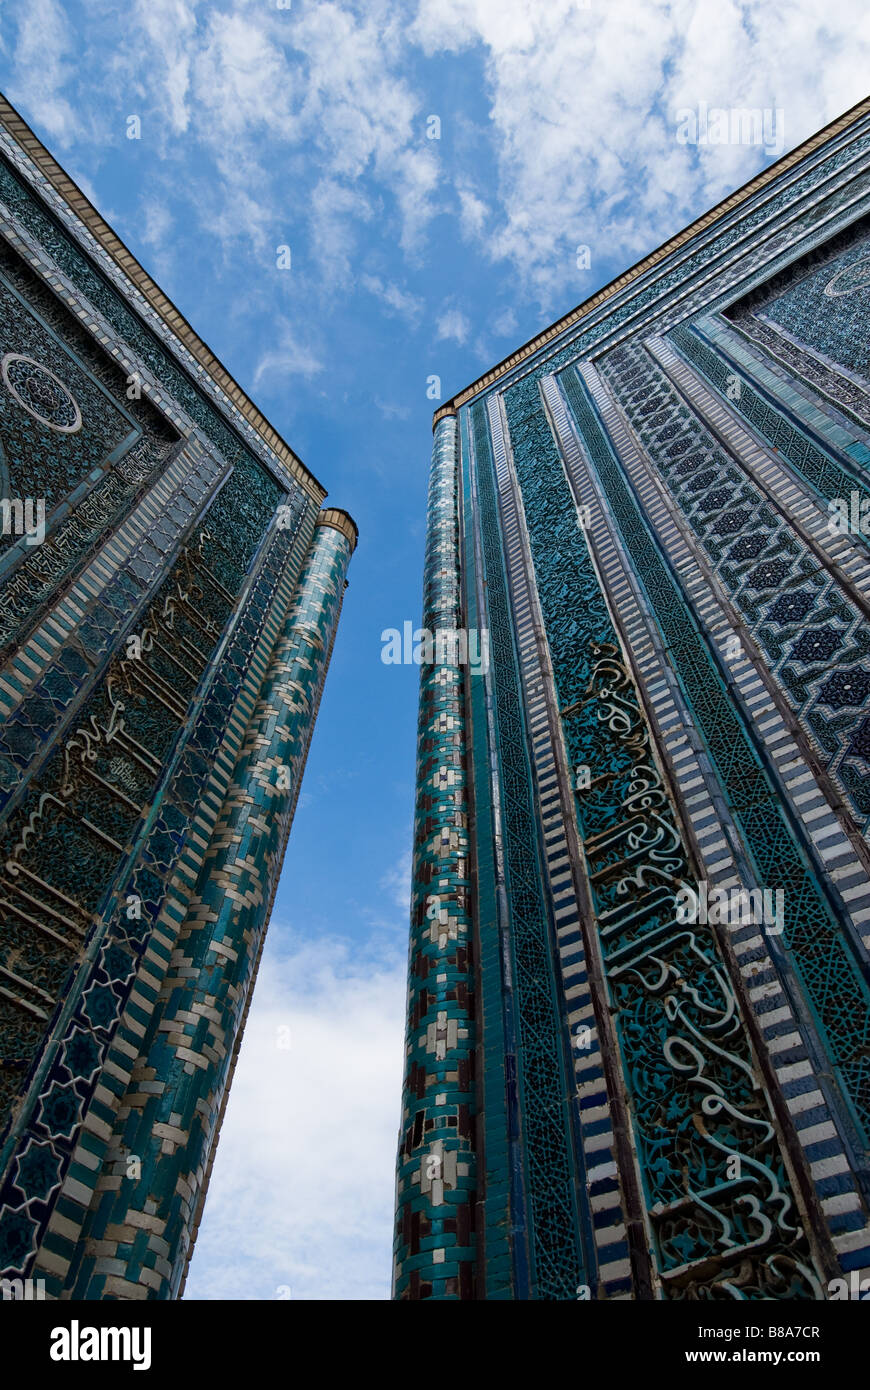 Blue tiled facades of Shahi Zinda Necropolis Samarkand Uzbekistan Stock Photo